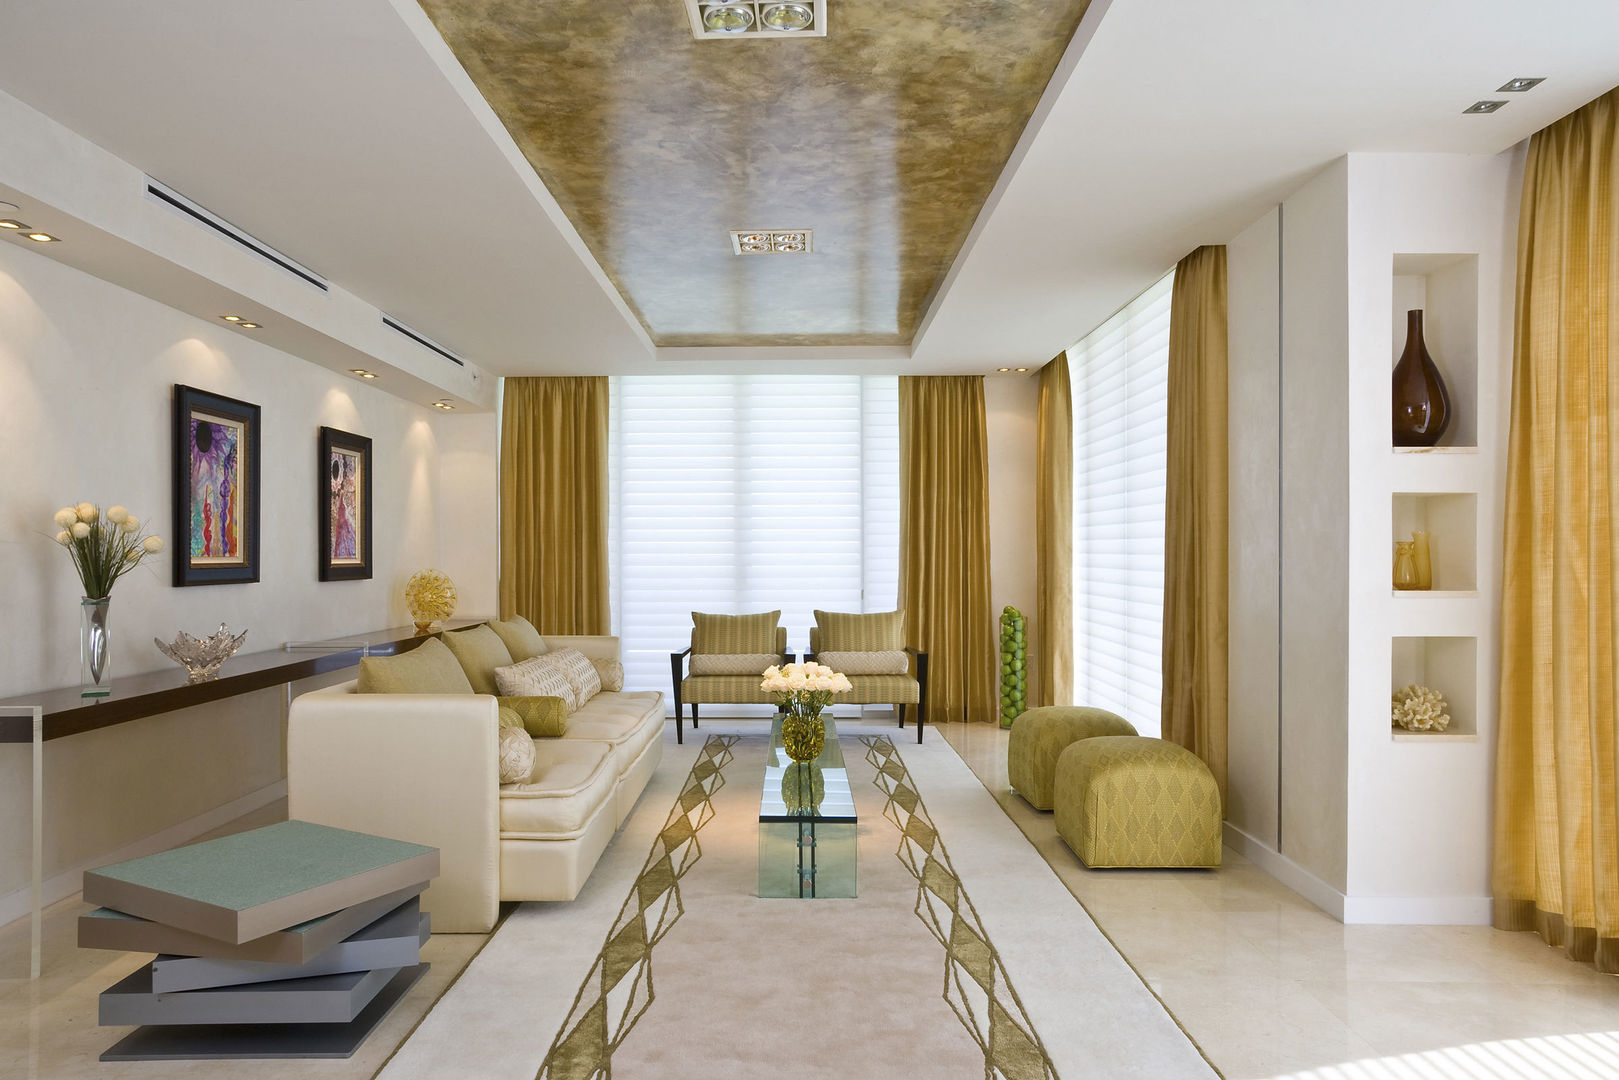 TADİLAT - DEKORASYON - TASARIM VE UYGULAMA, Dekorasyon Şirketi Dekorasyon Şirketi Classic style living room